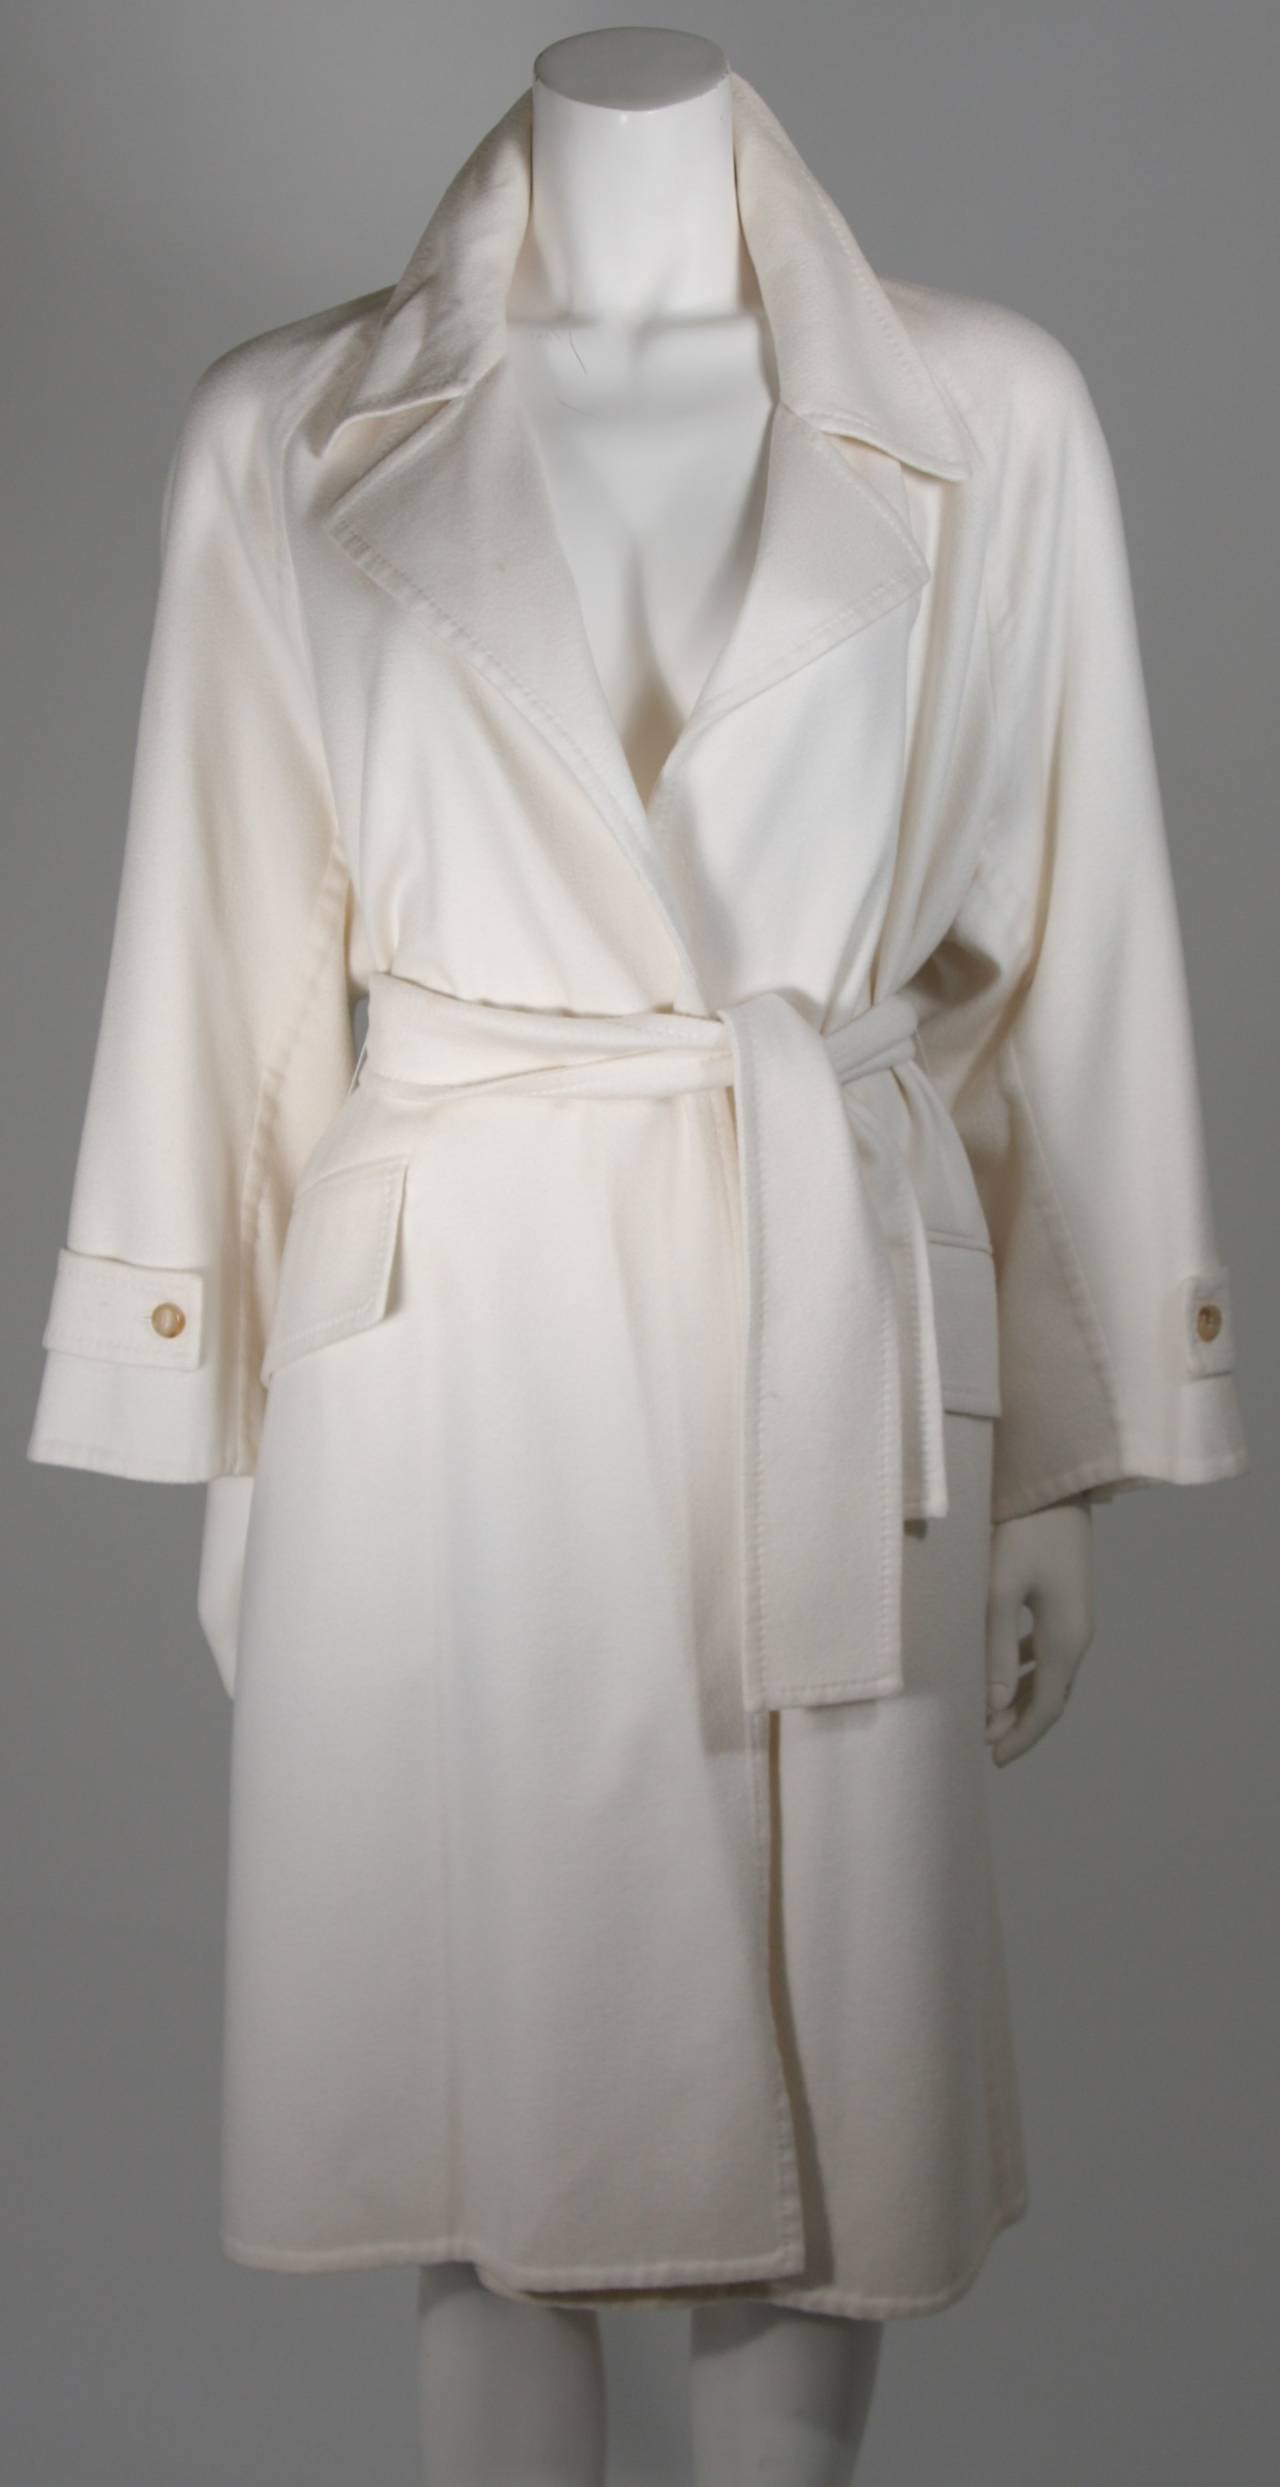 Dieser Mantel besteht aus einem äußerst geschmeidigen Kaschmir in einem wunderschönen, strahlenden Weiß. Vorne gibt es Taschen und einen Gürtelverschluss. Ausgezeichneter Zustand mit Originaletikett. Hergestellt in Frankreich.

Bitte kontaktieren